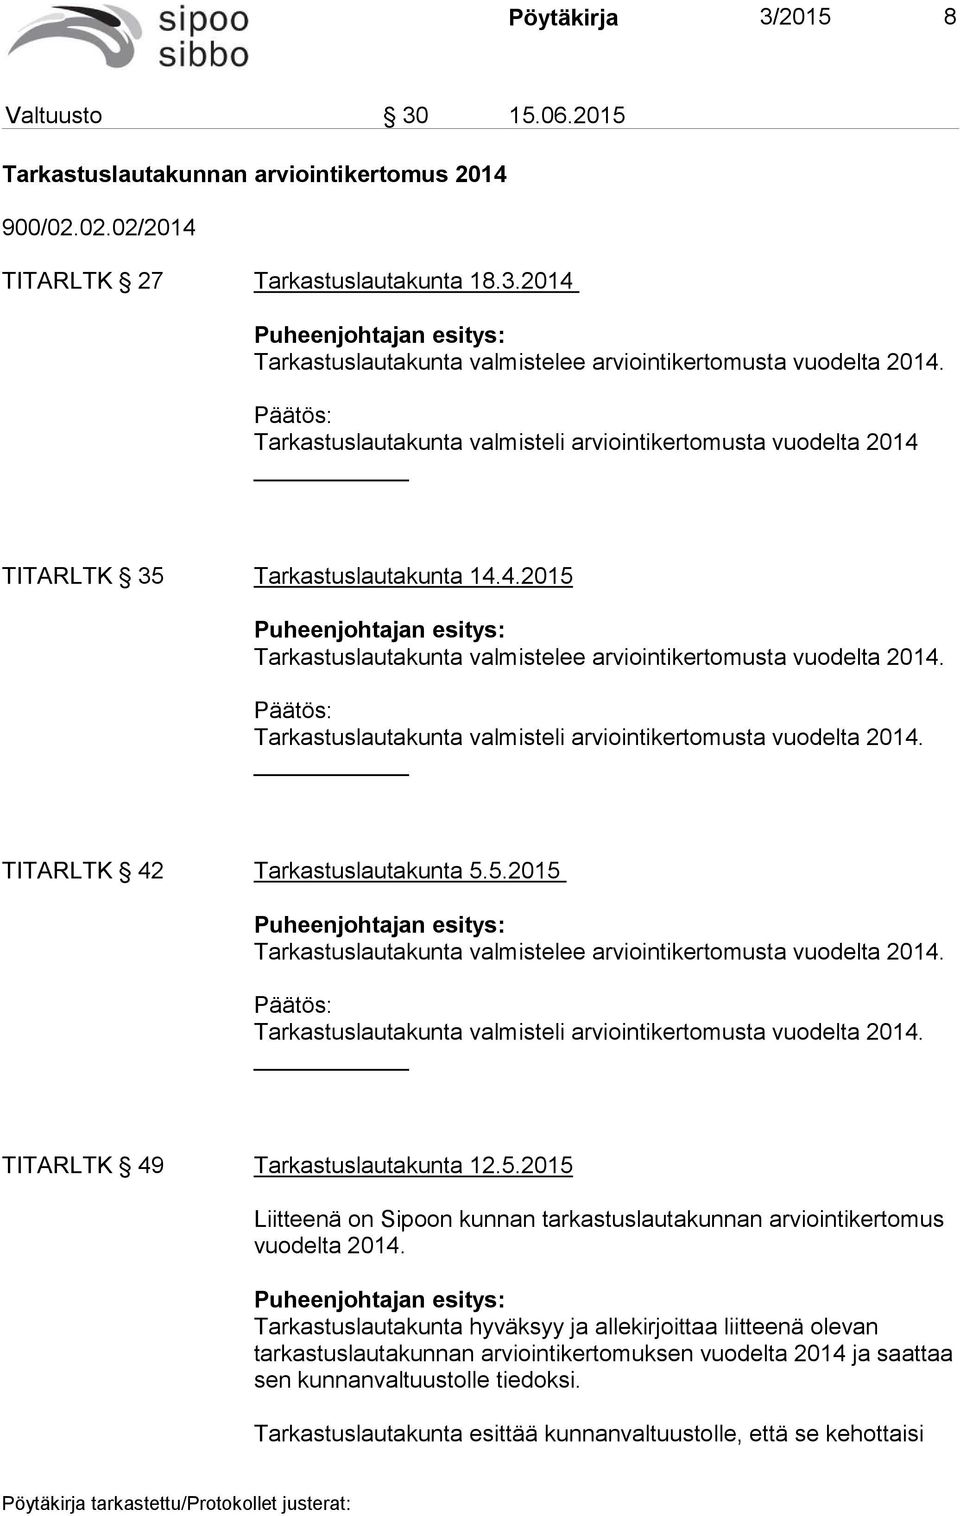 : Tarkastuslautakunta valmisteli arviointikertomusta vuodelta 2014. TITARLTK 42 Tarkastuslautakunta 5.5.2015 Puheenjohtajan esitys: Tarkastuslautakunta valmistelee arviointikertomusta vuodelta 2014.